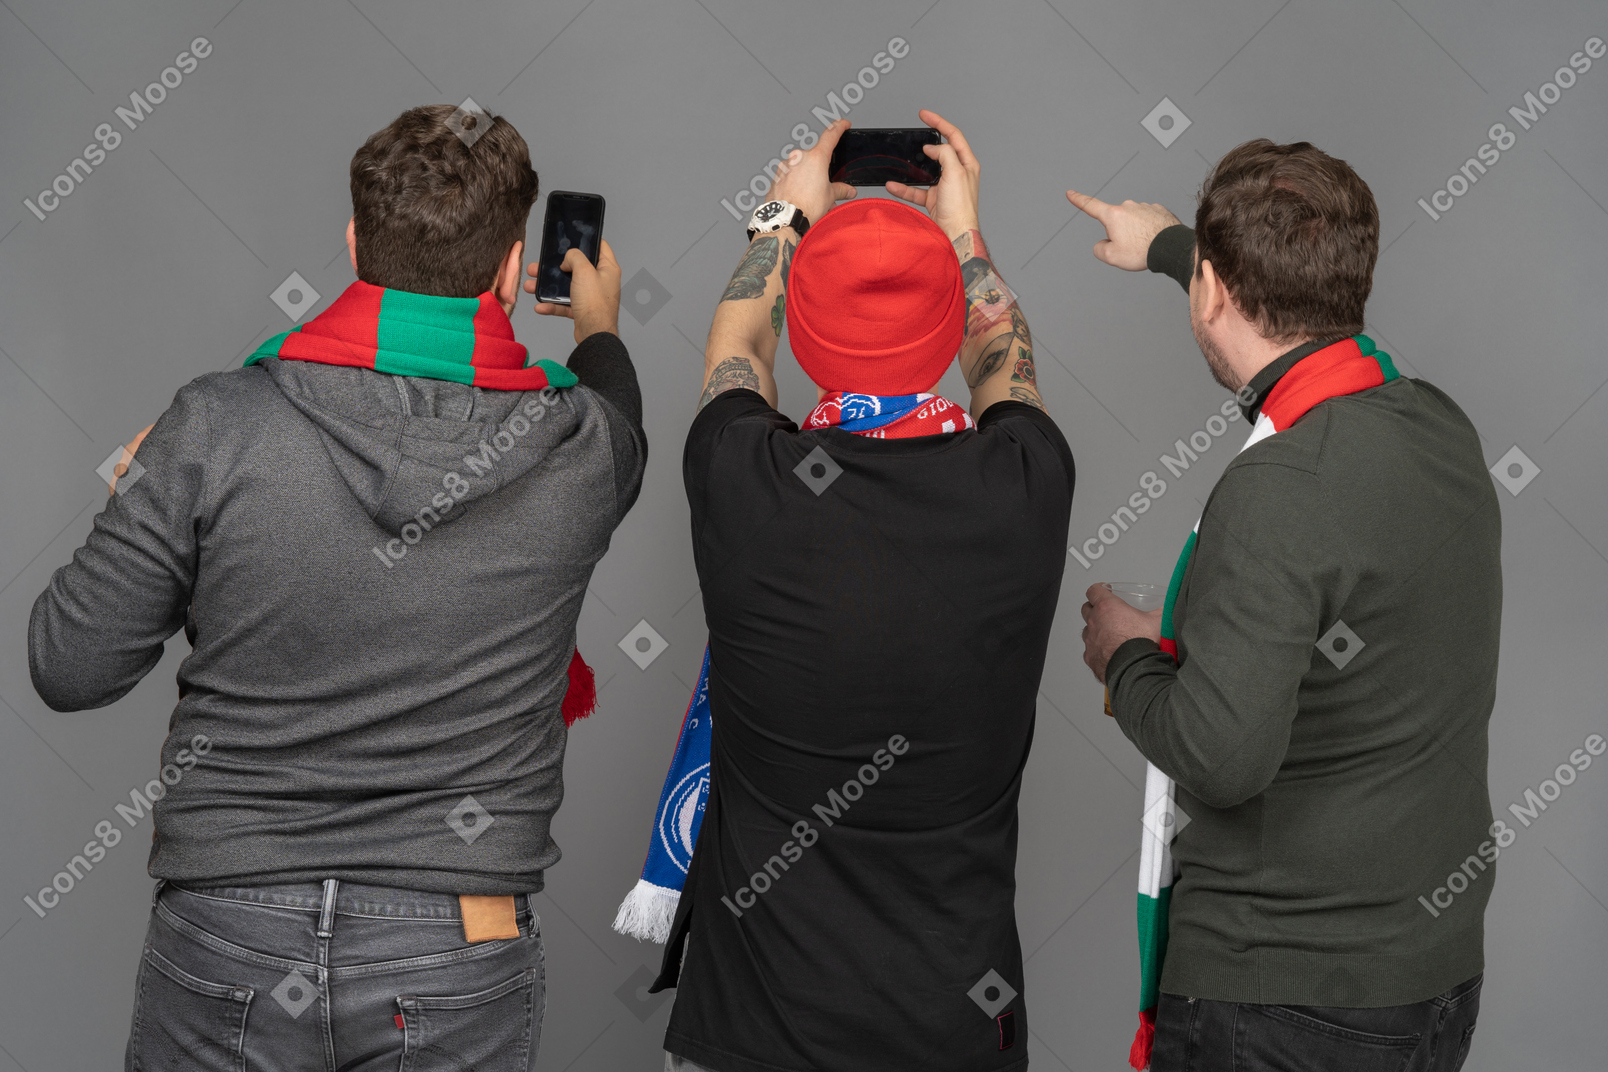 后视图的三个男足球迷拍照手机